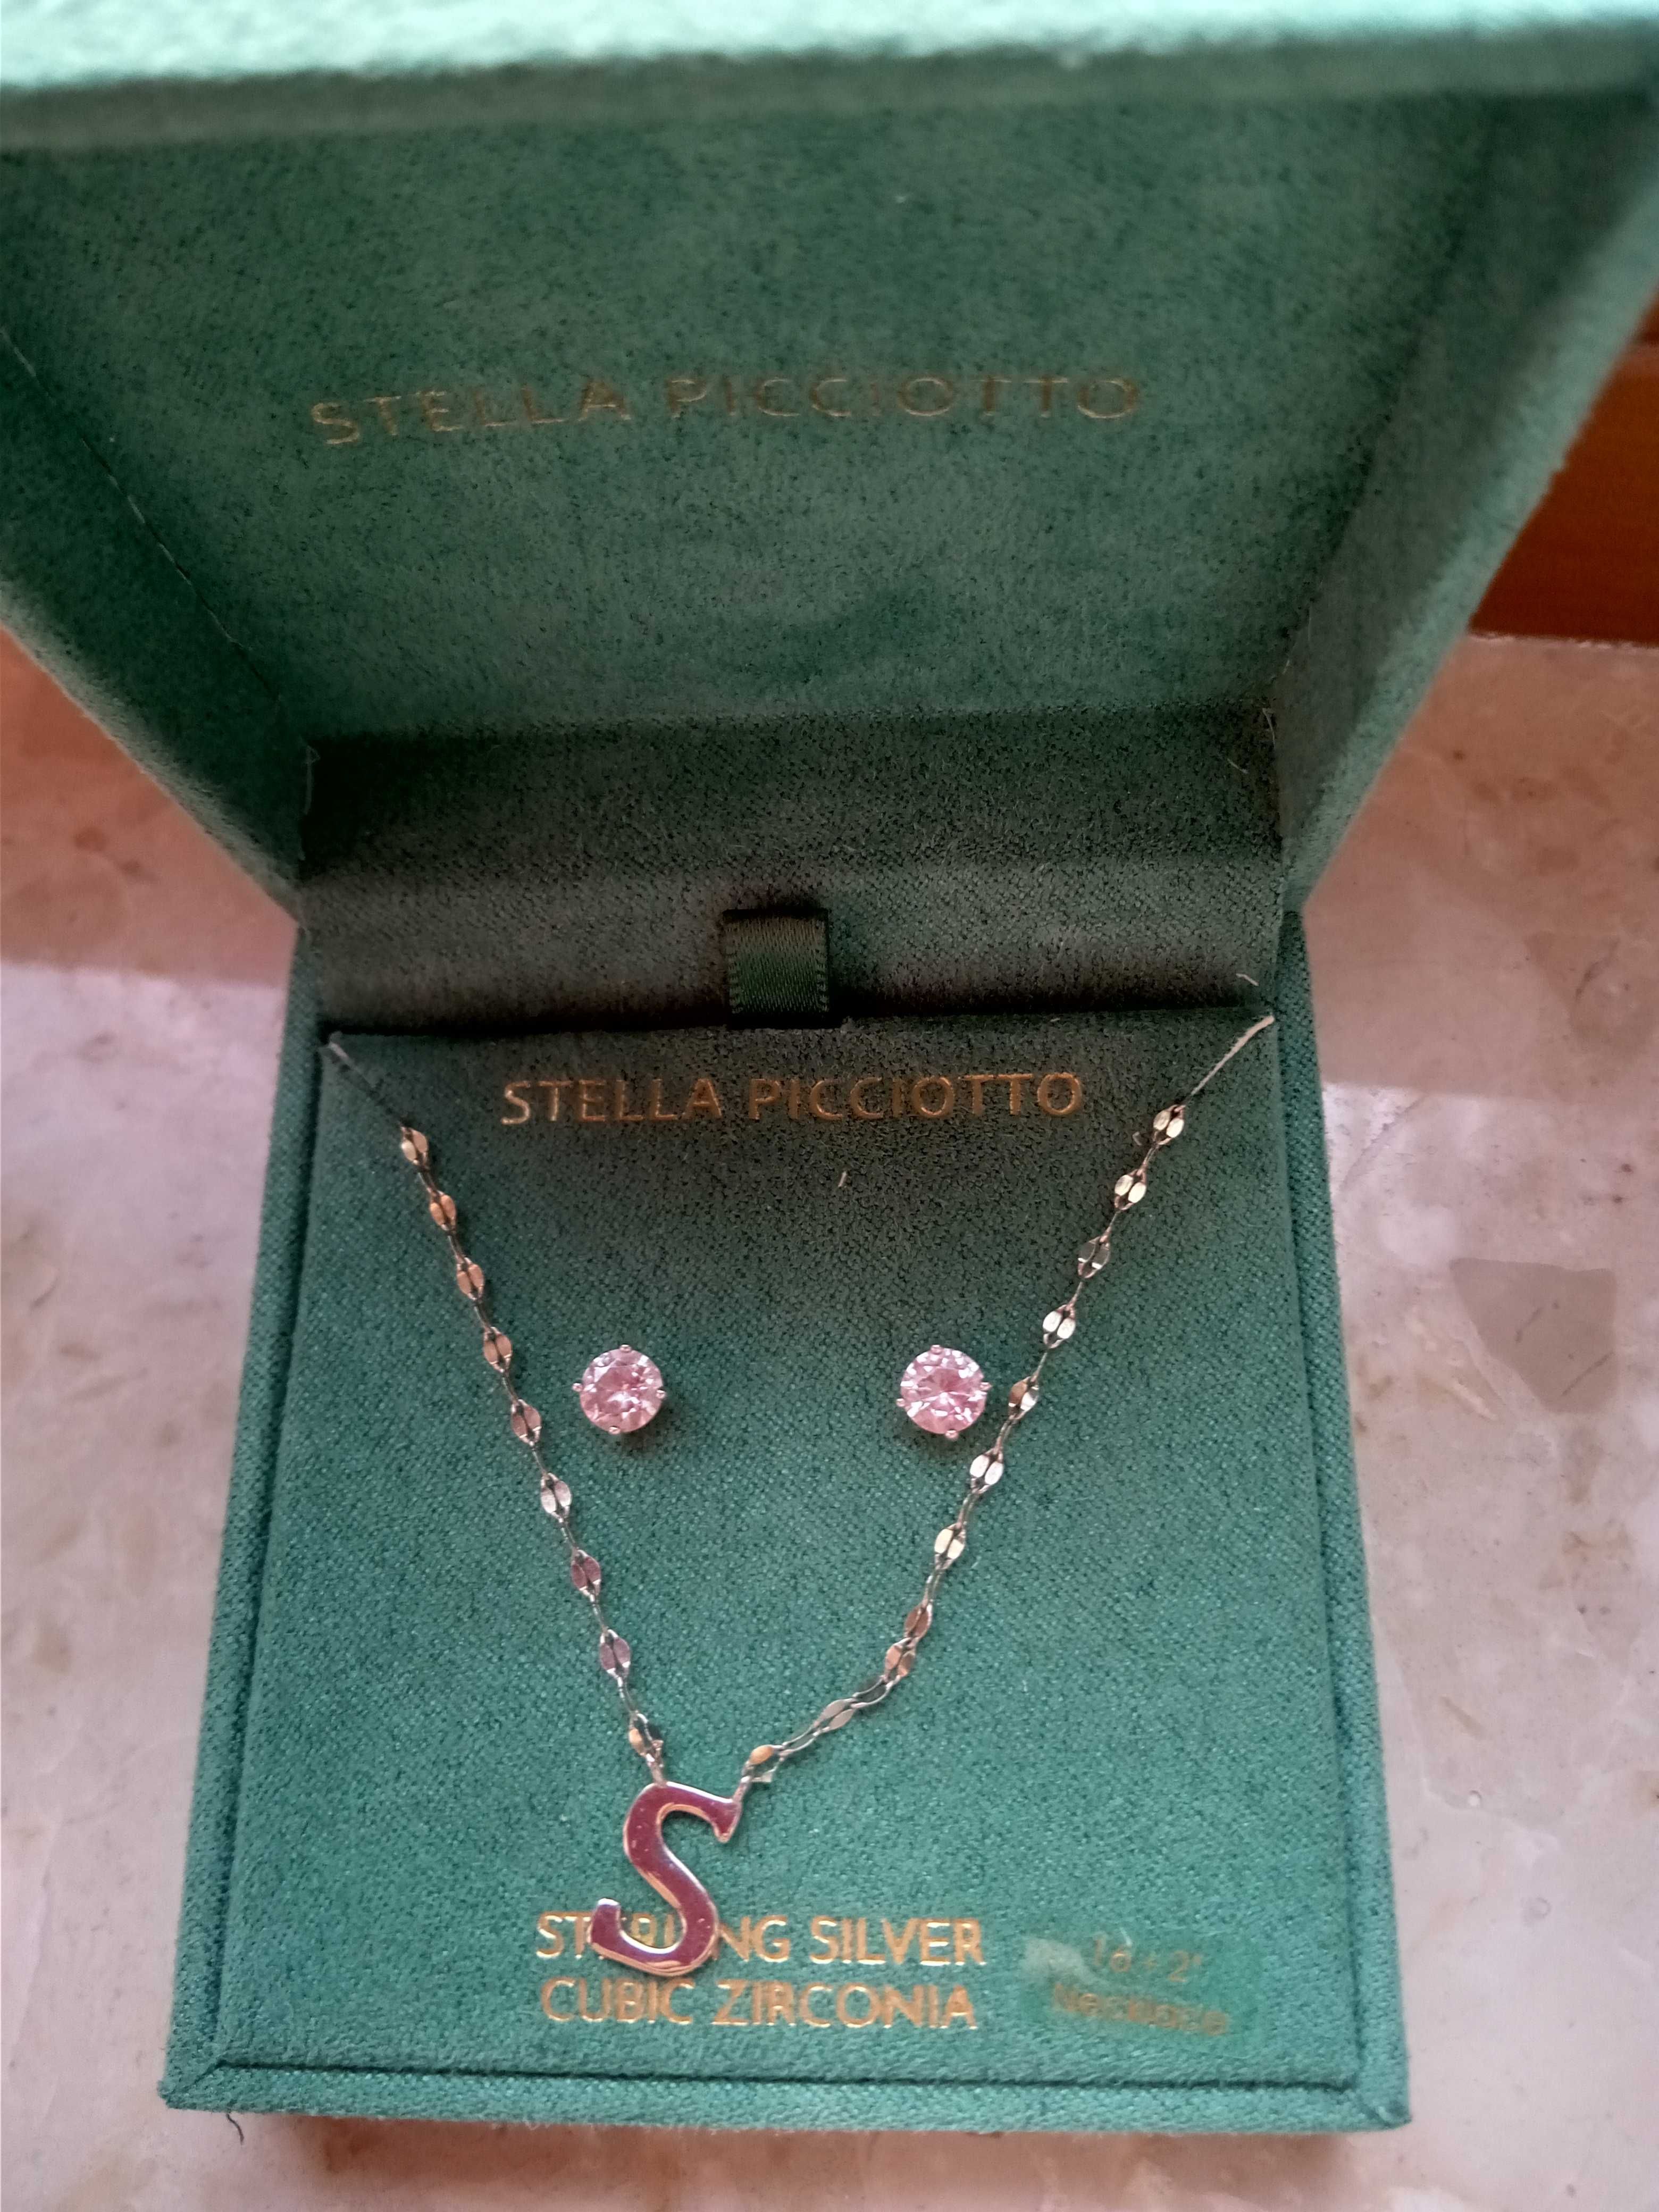 Stella picciotto srebro próby 925 plus złoto  kolczyki i naszyjnik